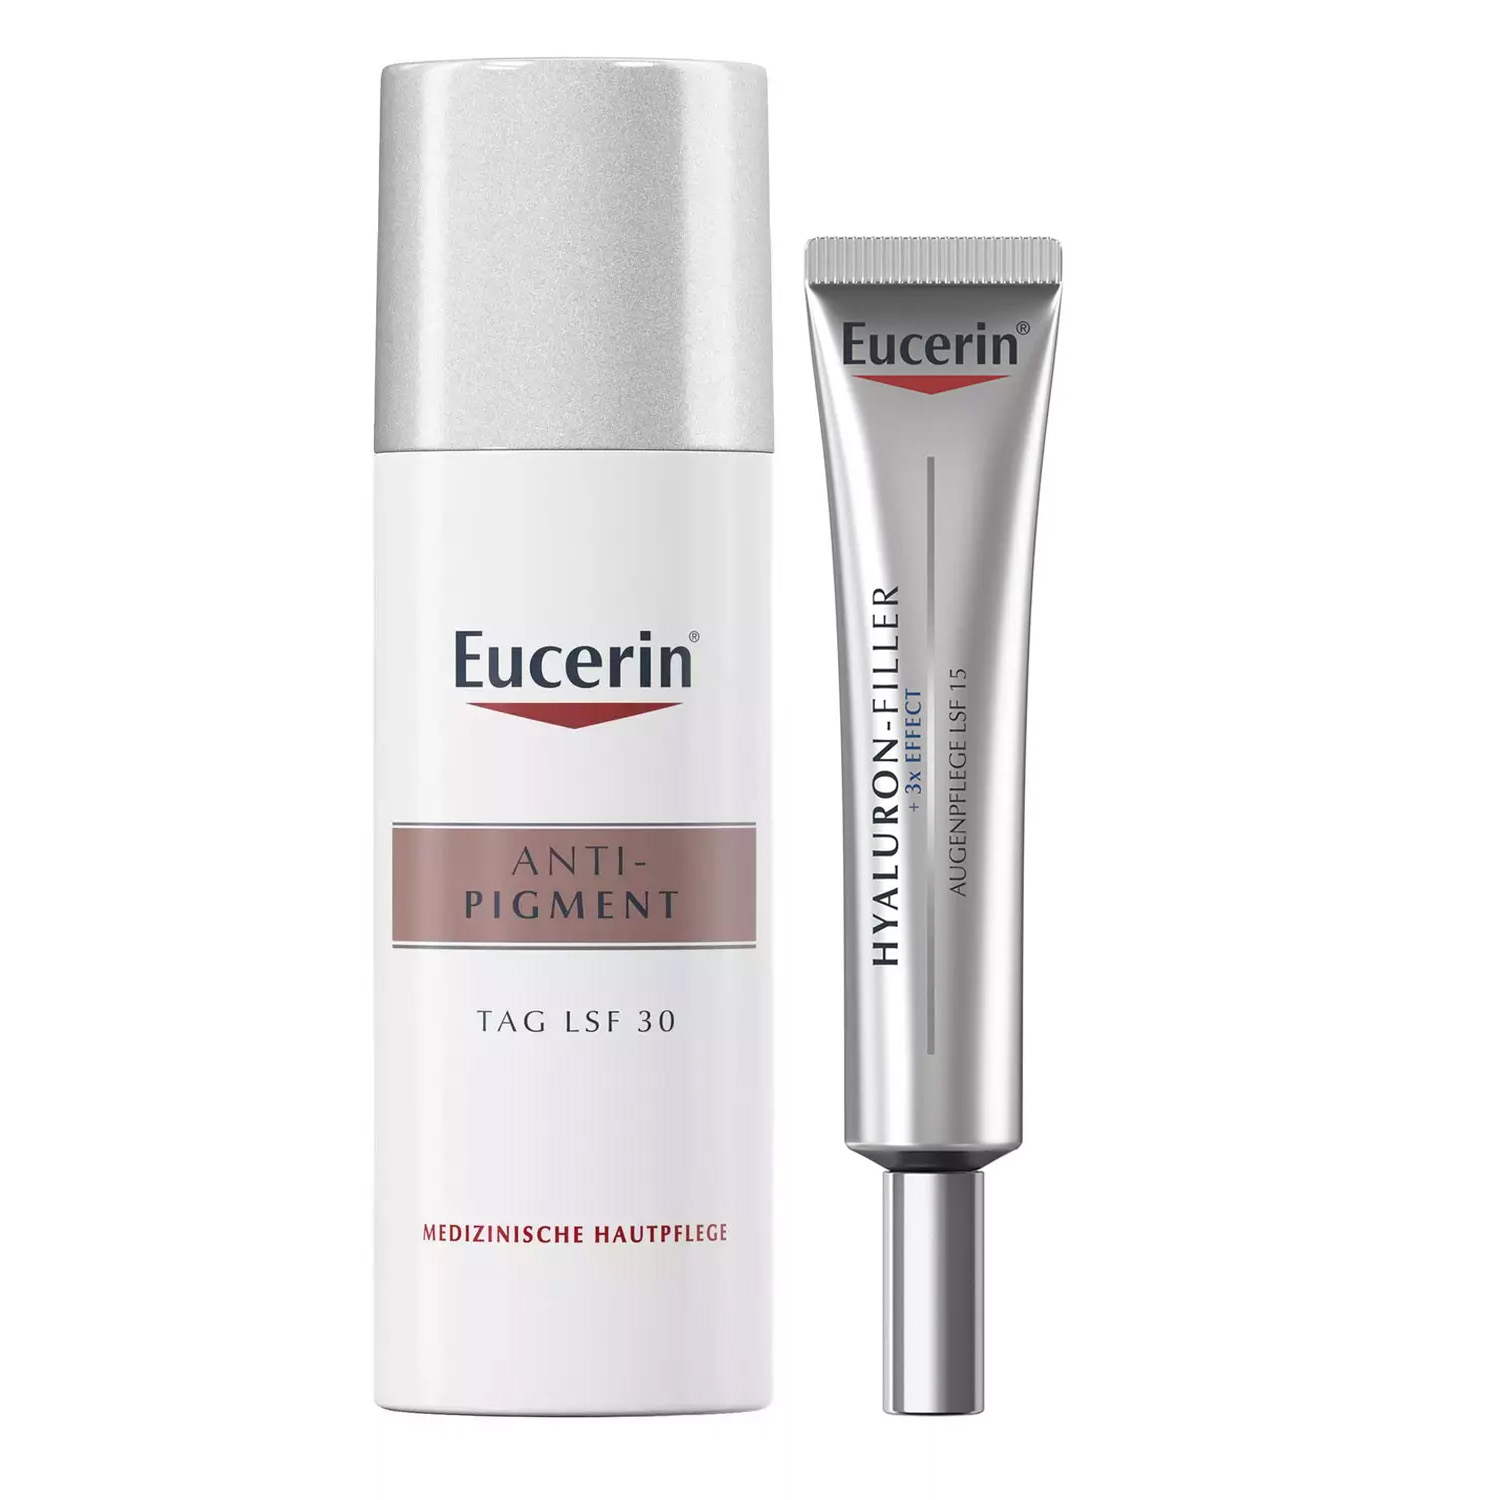 eucerin набор осветляющий крем для кожи вокруг глаз 15 мл дневной крем spf 30 50 мл eucerin anti pigment Eucerin Набор для ежедневного ухода: крем для кожи вокруг глаз 15 мл + дневной крем 50 мл (Eucerin, Anti-Pigment)